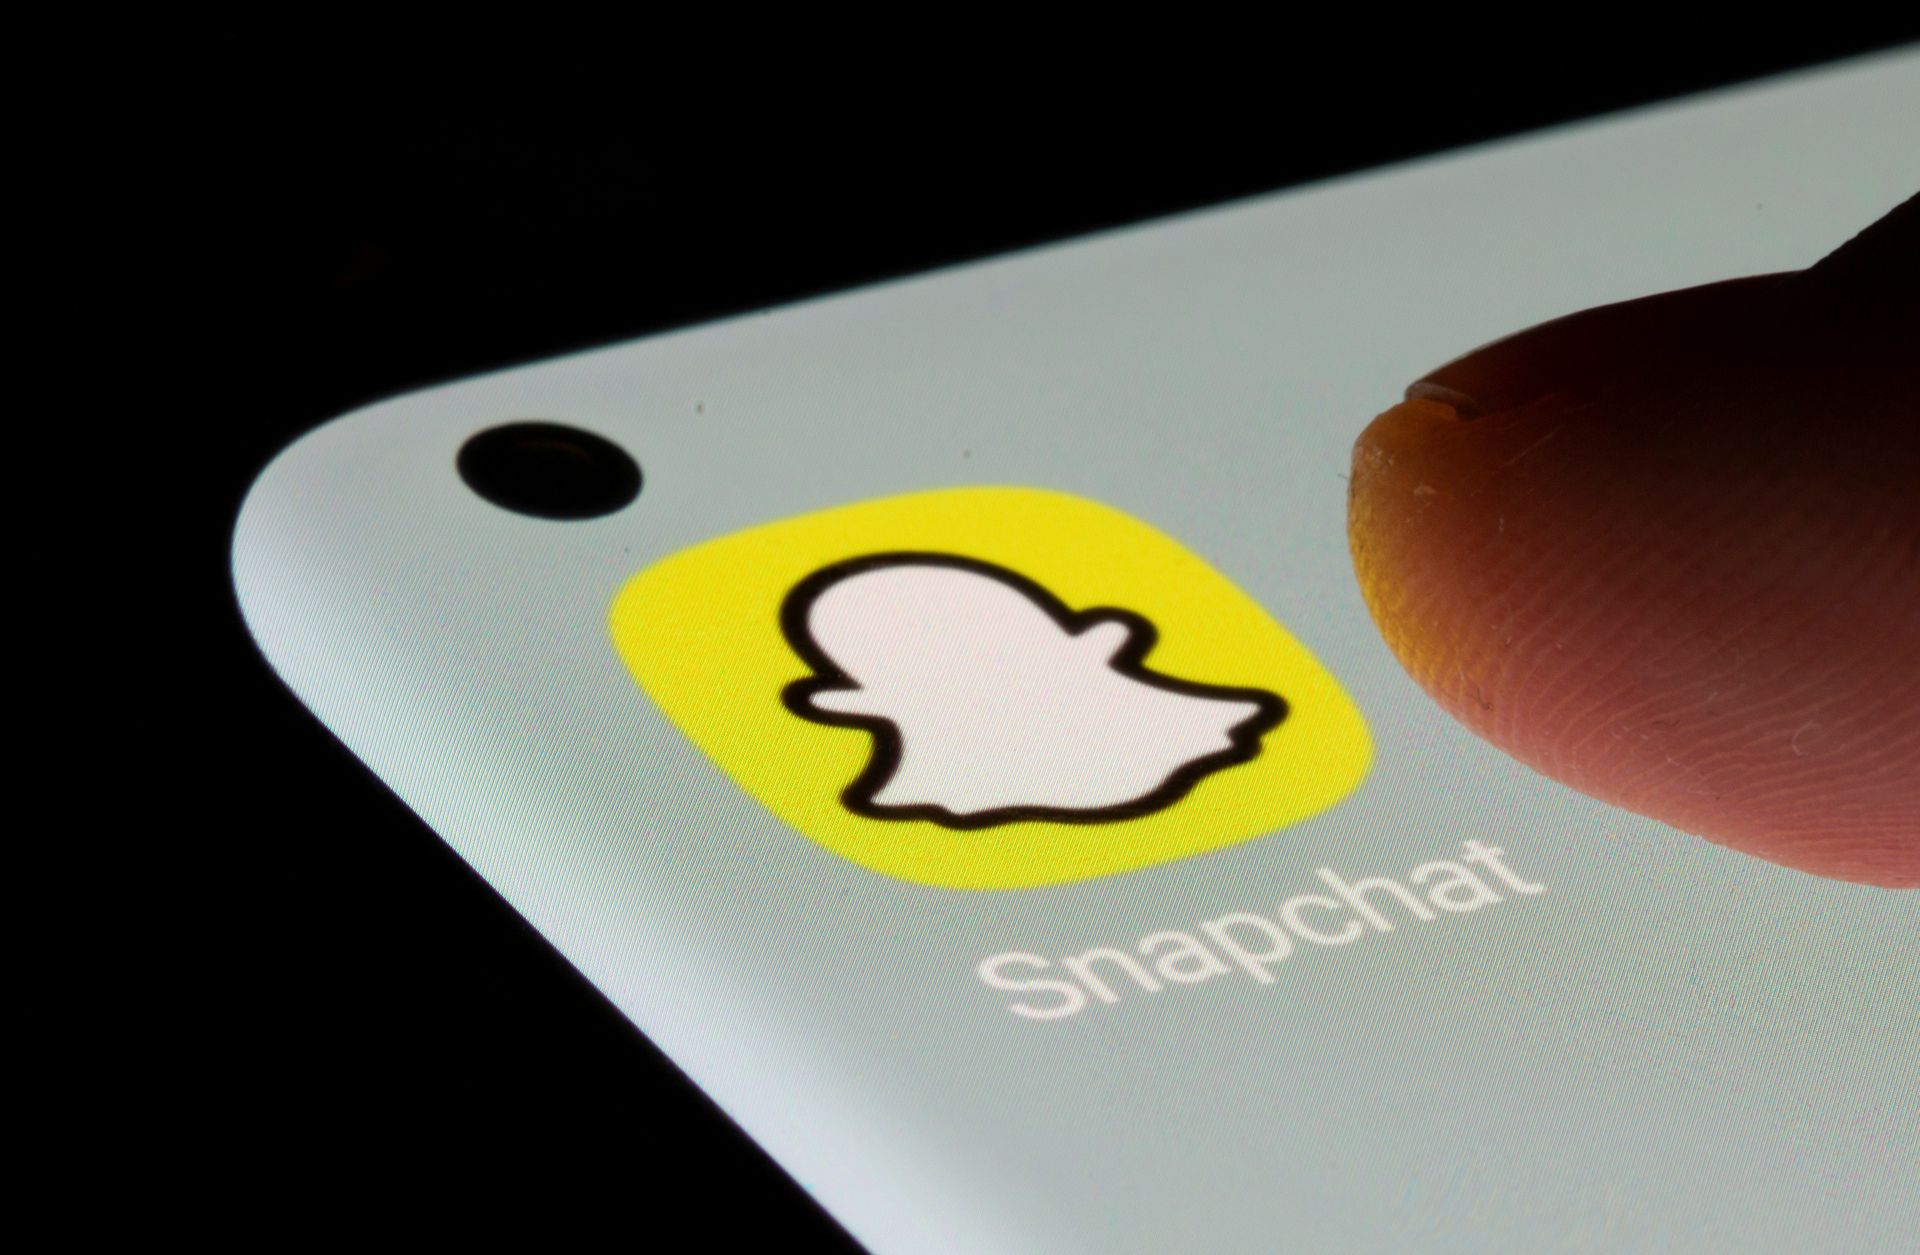 Heute werden wir den Snapchat Plus-Abonnementdienst durchgehen, der angeblich ein Premium-Abonnement für die beliebte Social-Media-App ist.